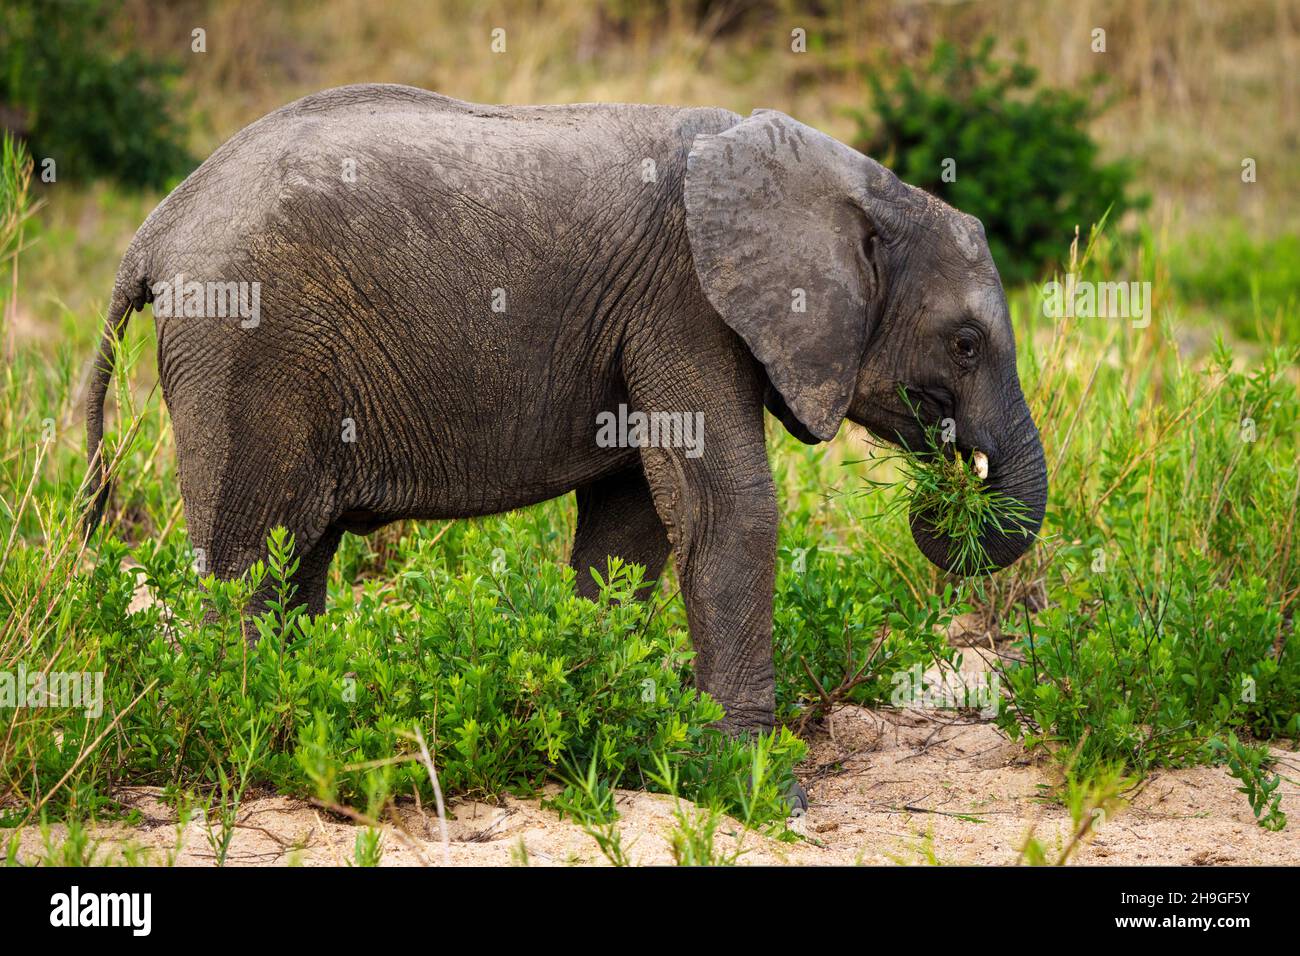 Alimentation de l'éléphant de brousse africain ou de l'éléphant de savane africaine (Loxodonta africana).Mpumalanga.Afrique du Sud. Banque D'Images